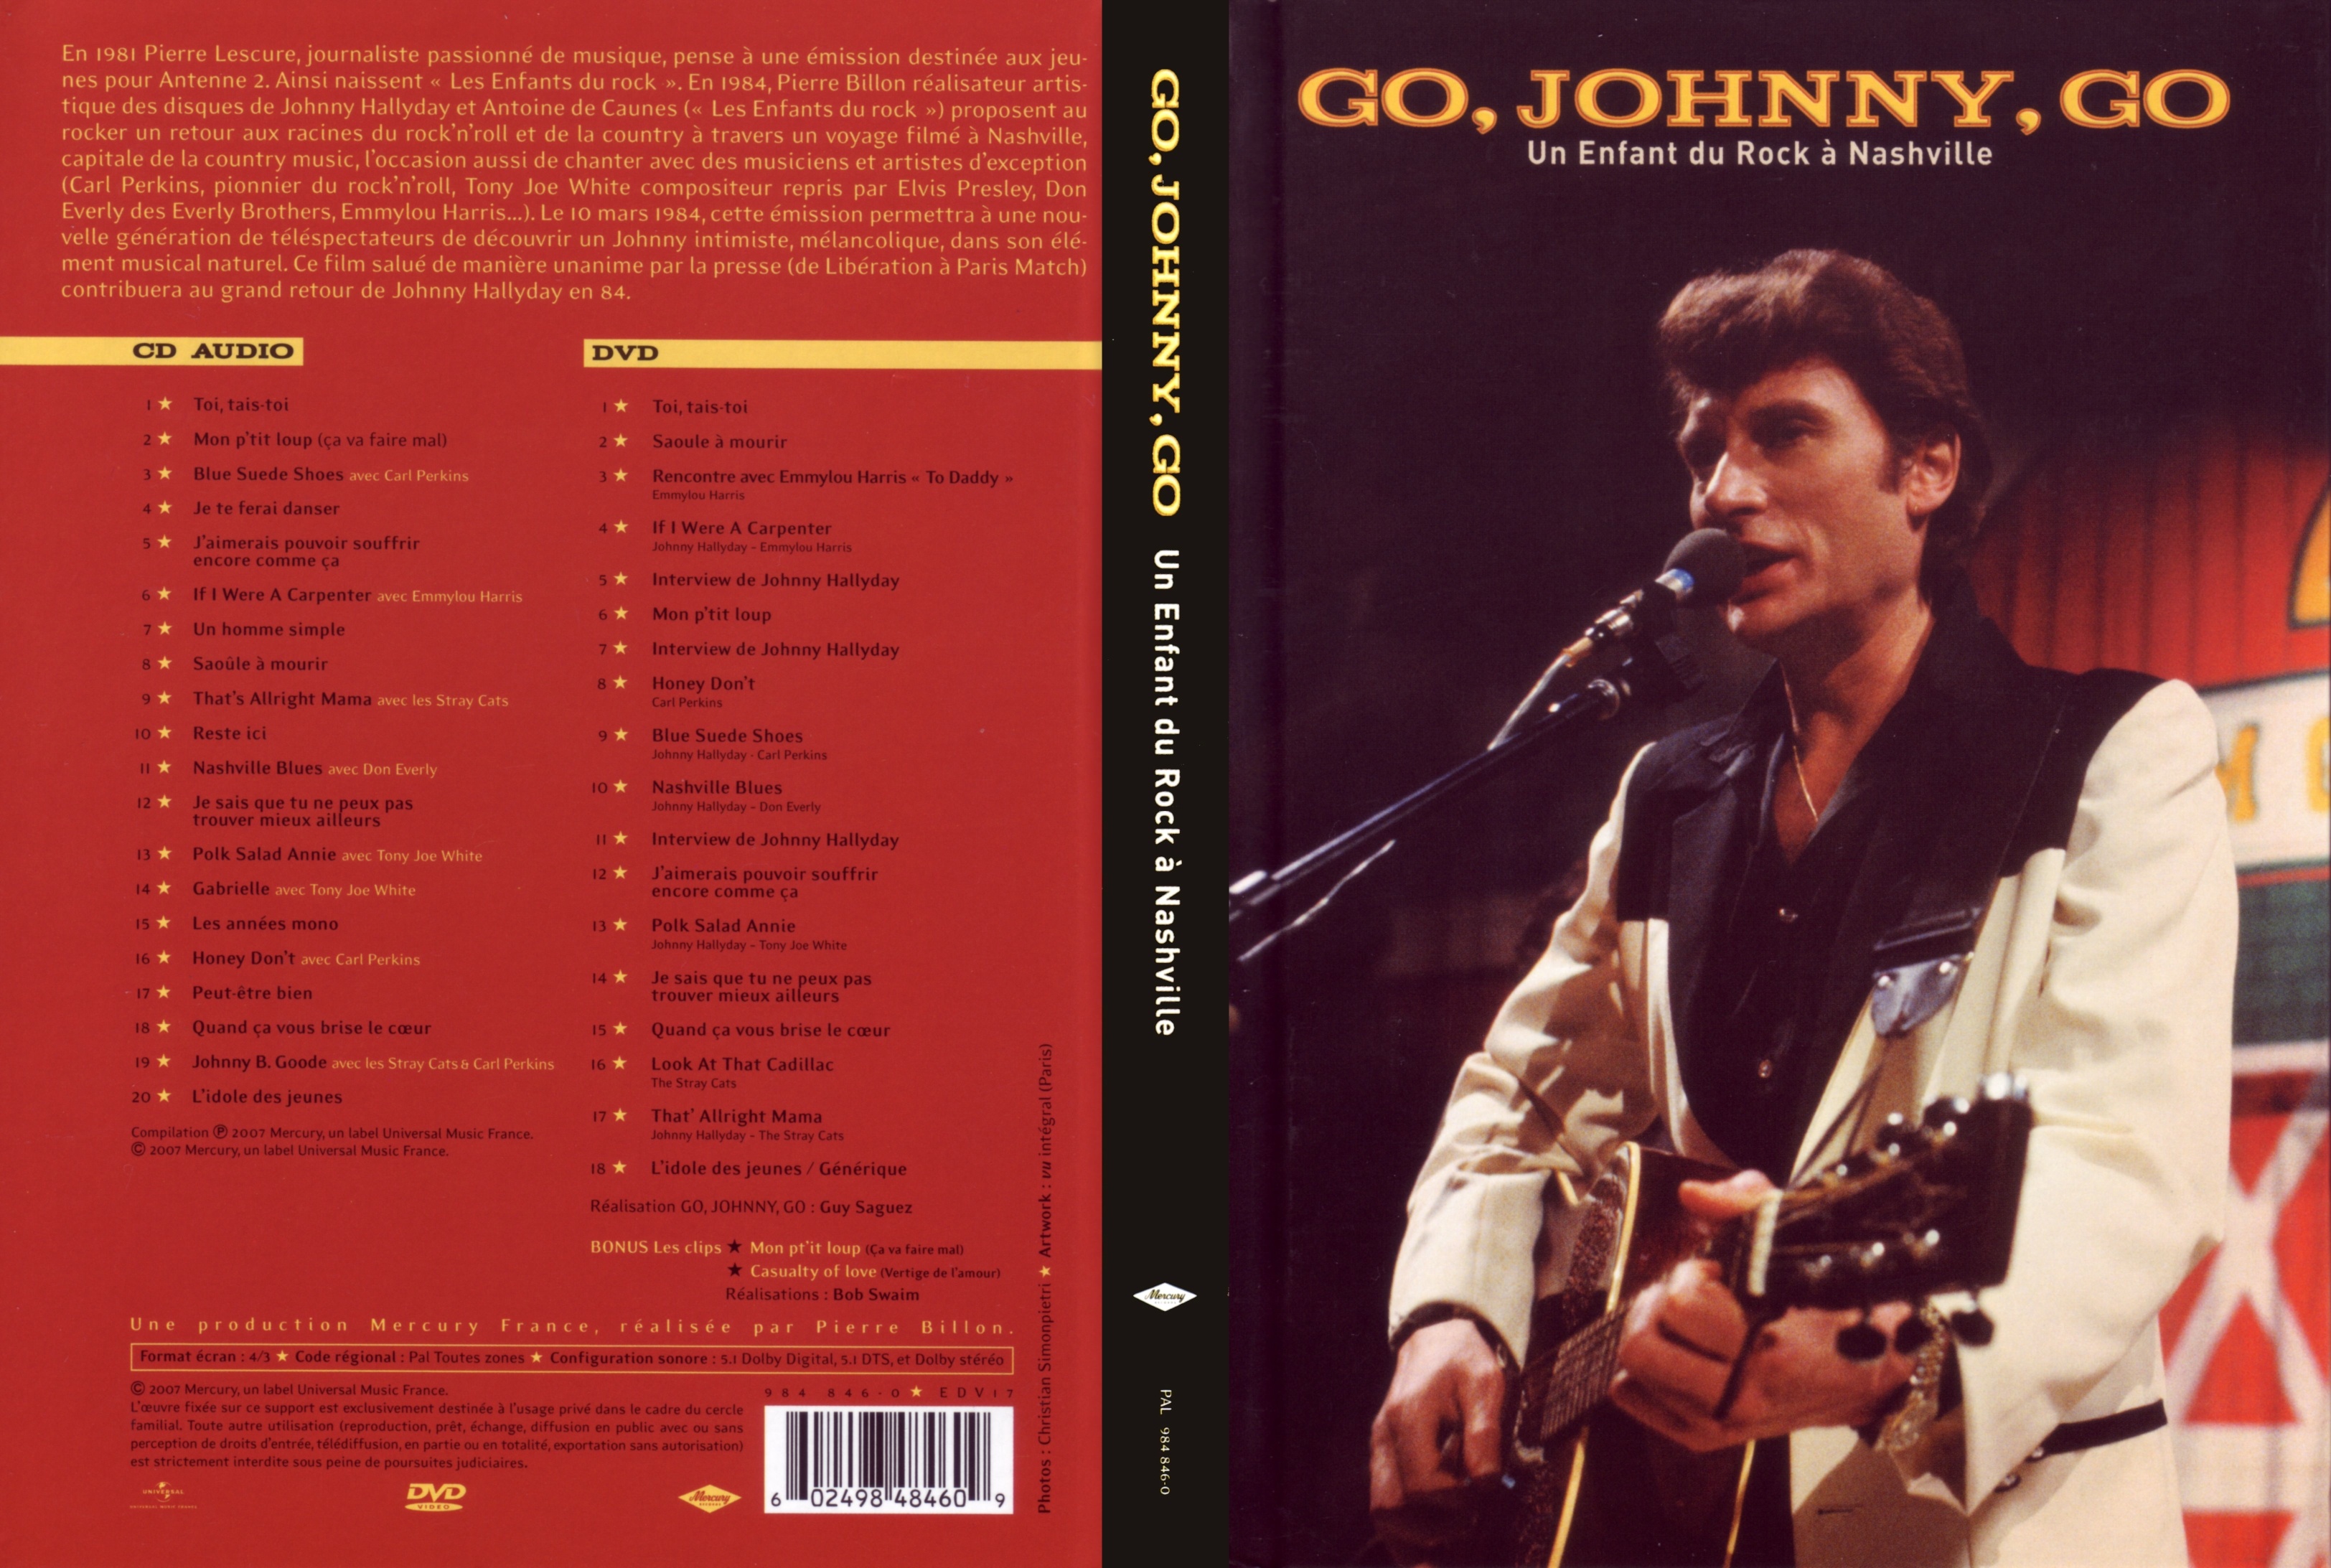 Jaquette DVD Go Johnny go